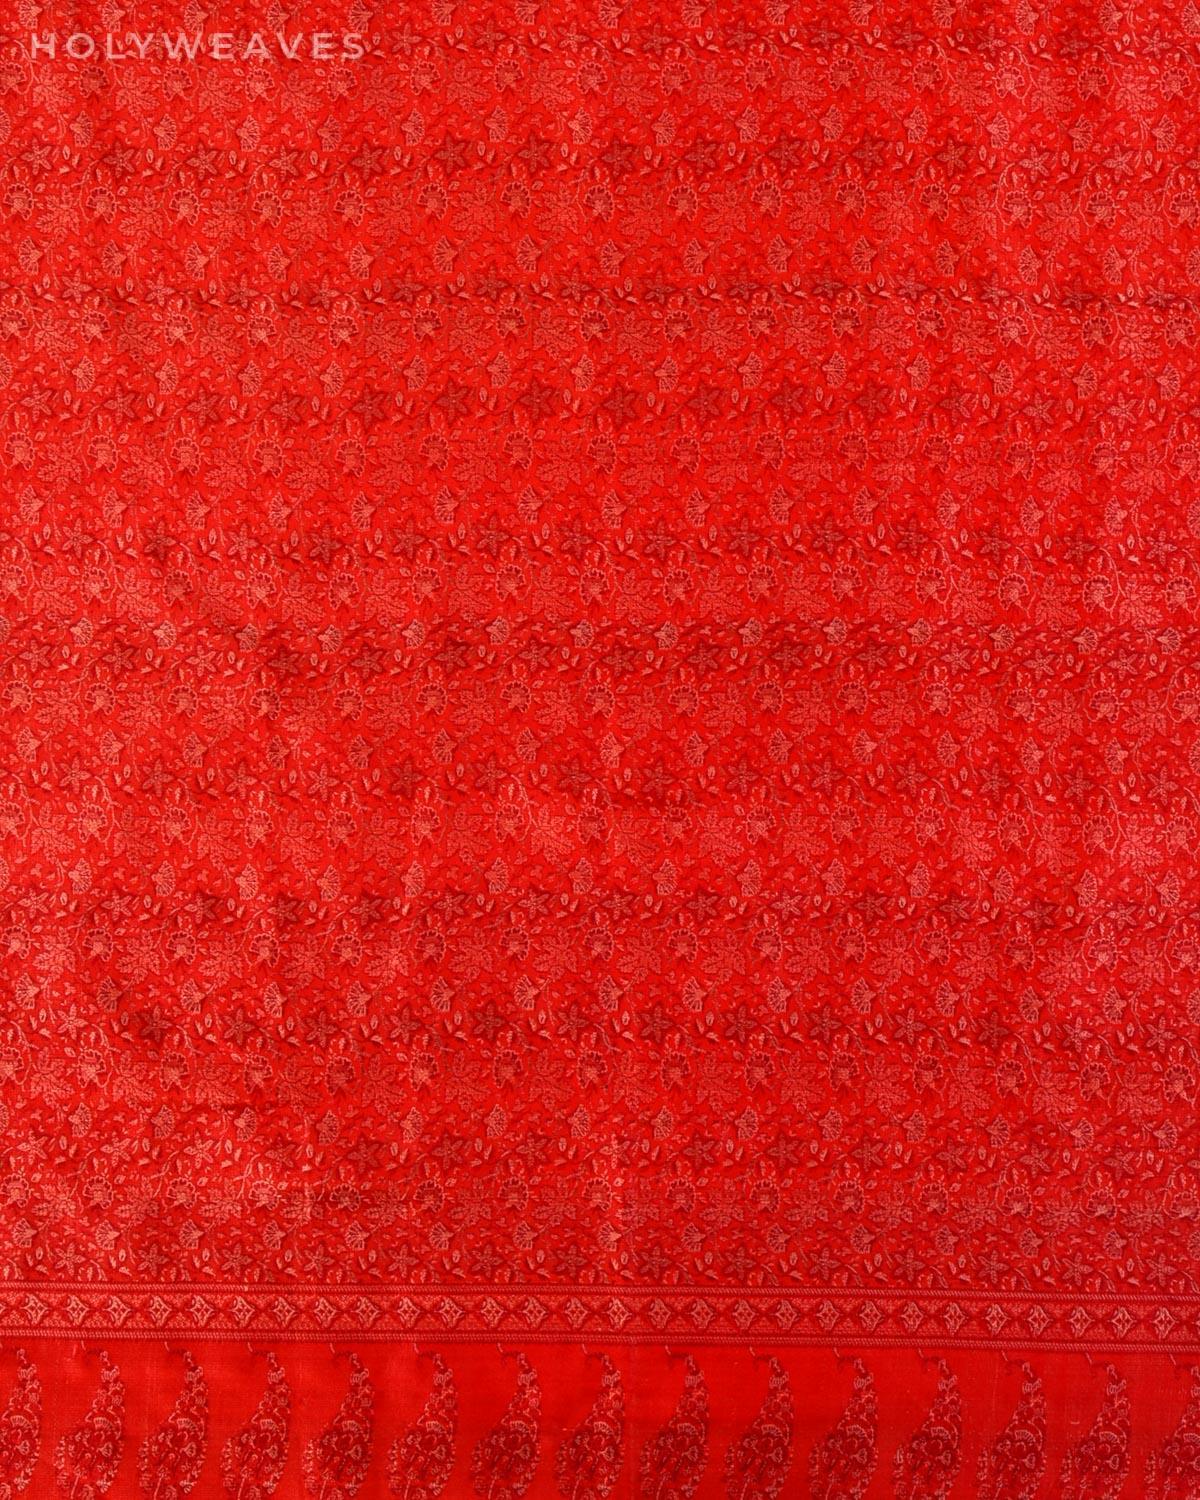 Red Banarasi Jamawar Handwoven Silk Scarf 72"x21" - By HolyWeaves, Benares